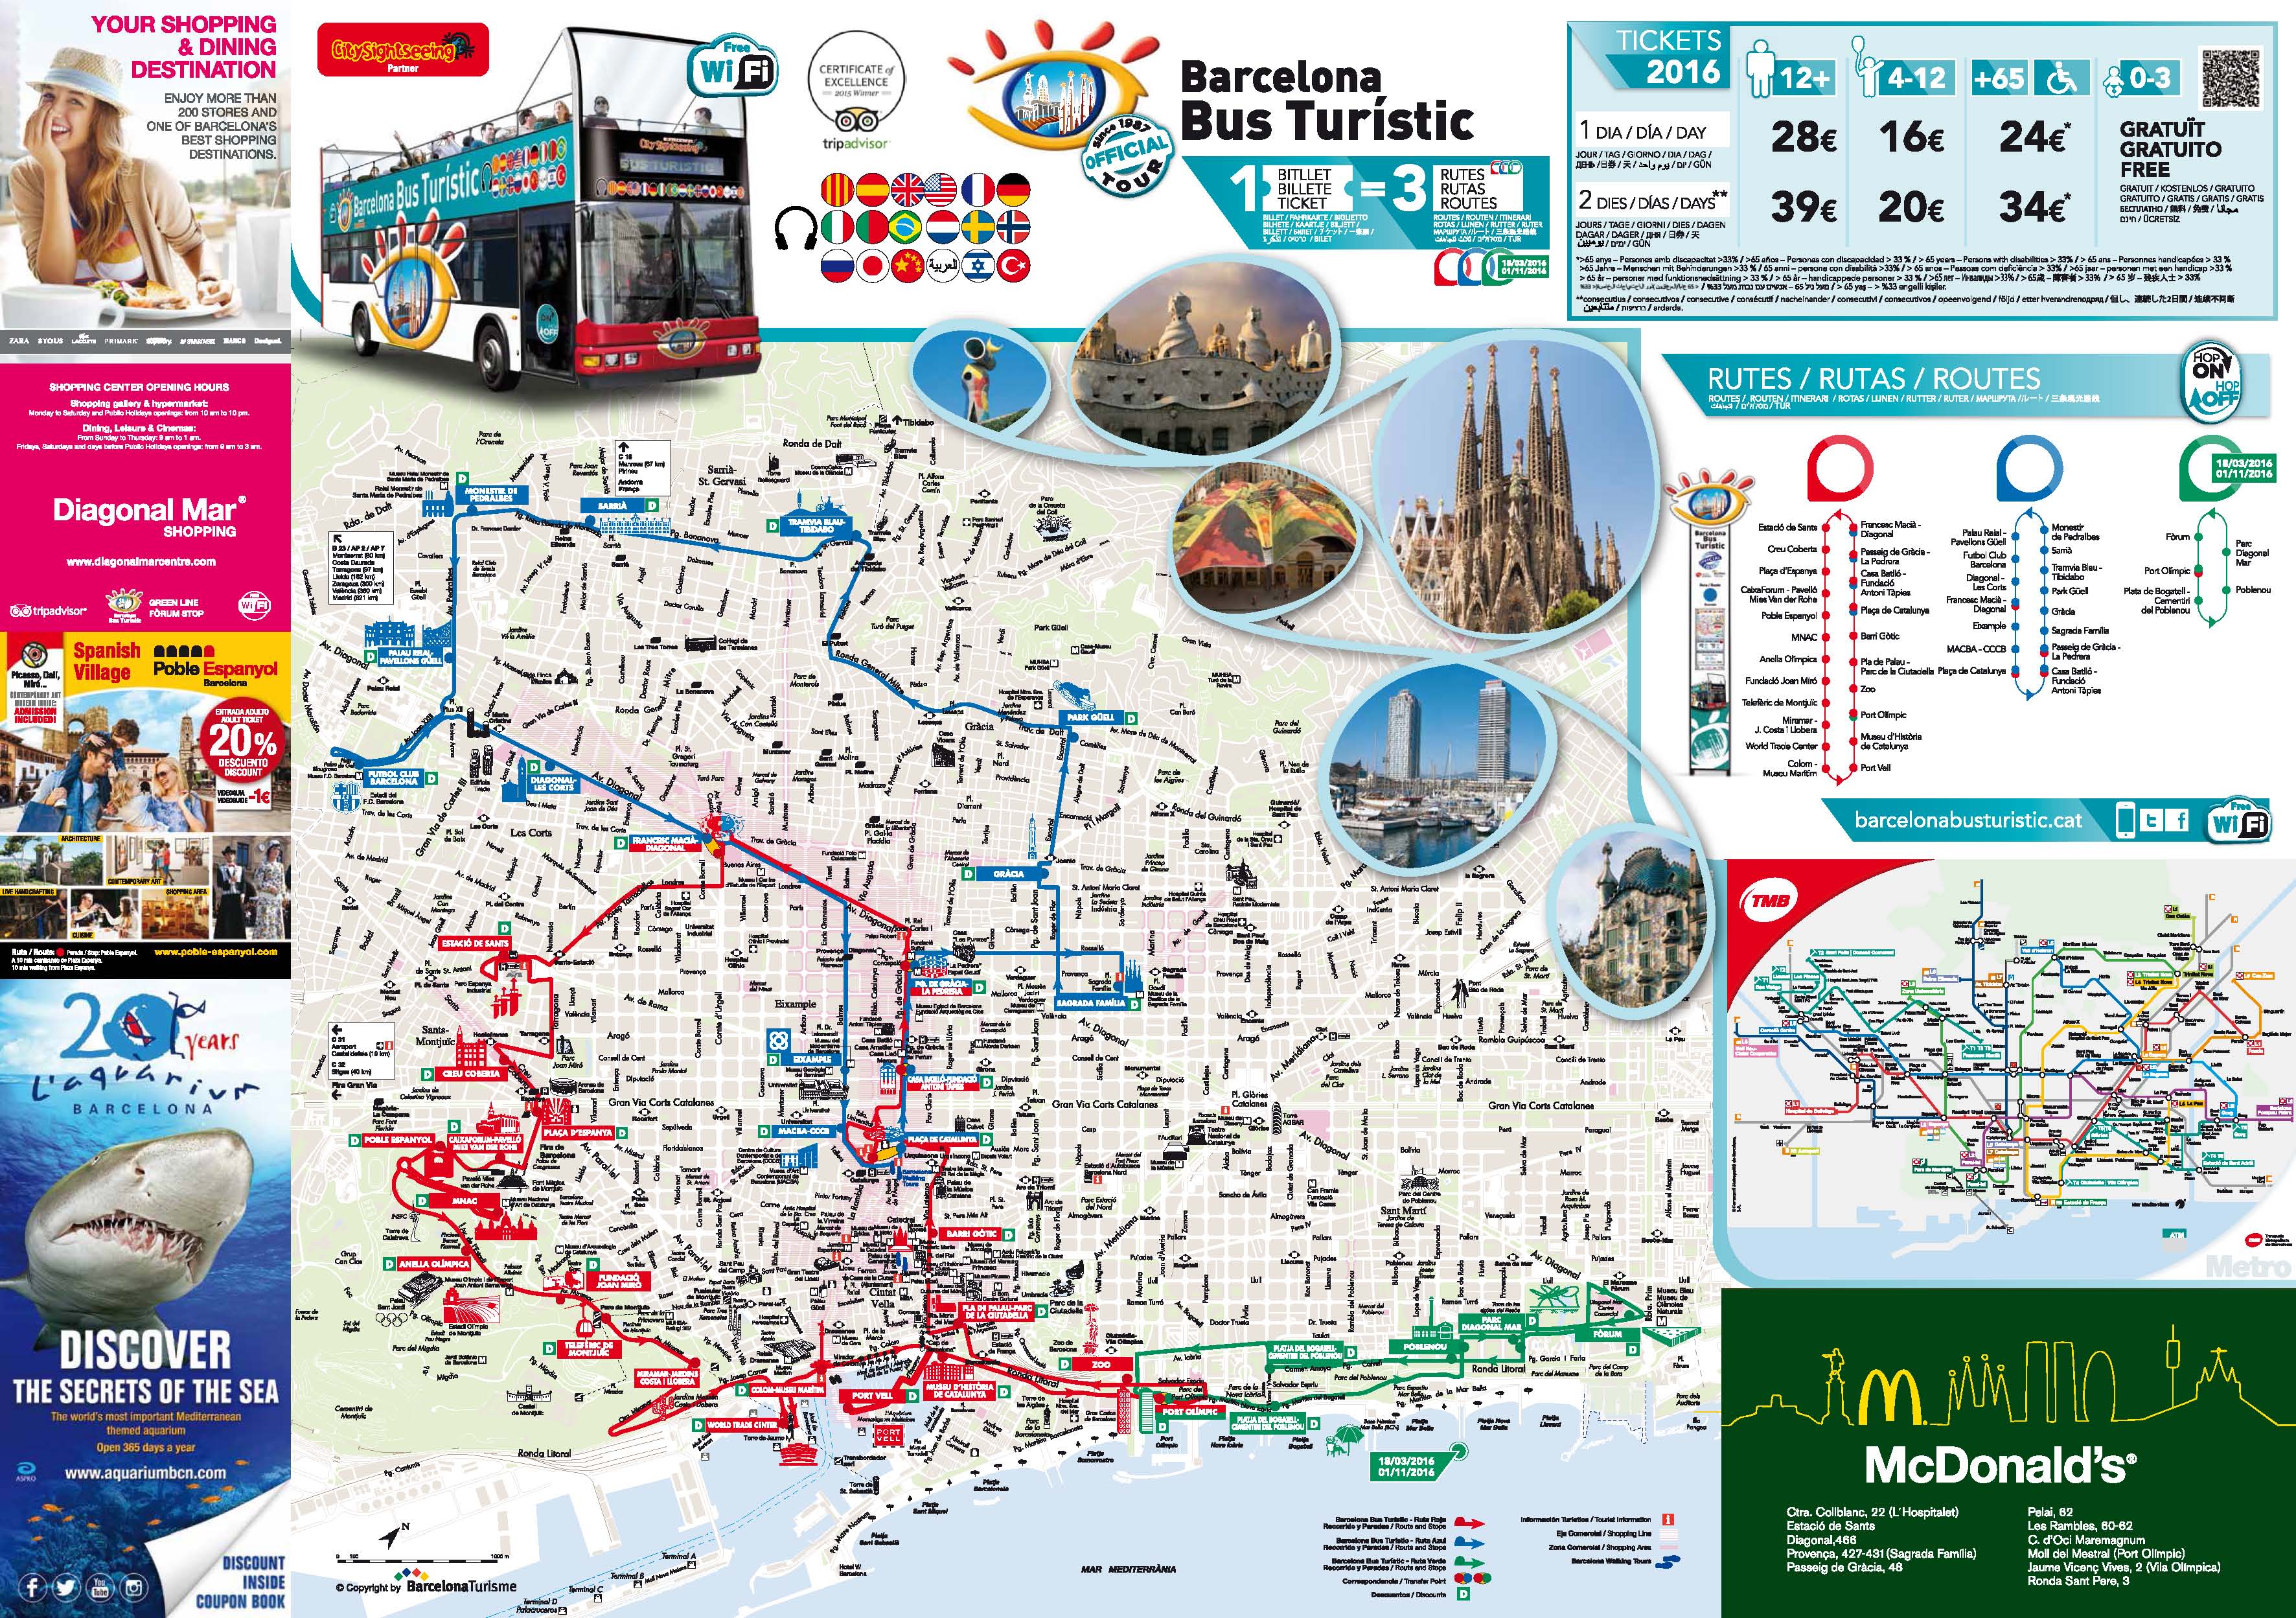 10 Best Barcelona Hop On Hop Off Tours | Compare Bus Tours | Maps Pdf | Reviews 2021